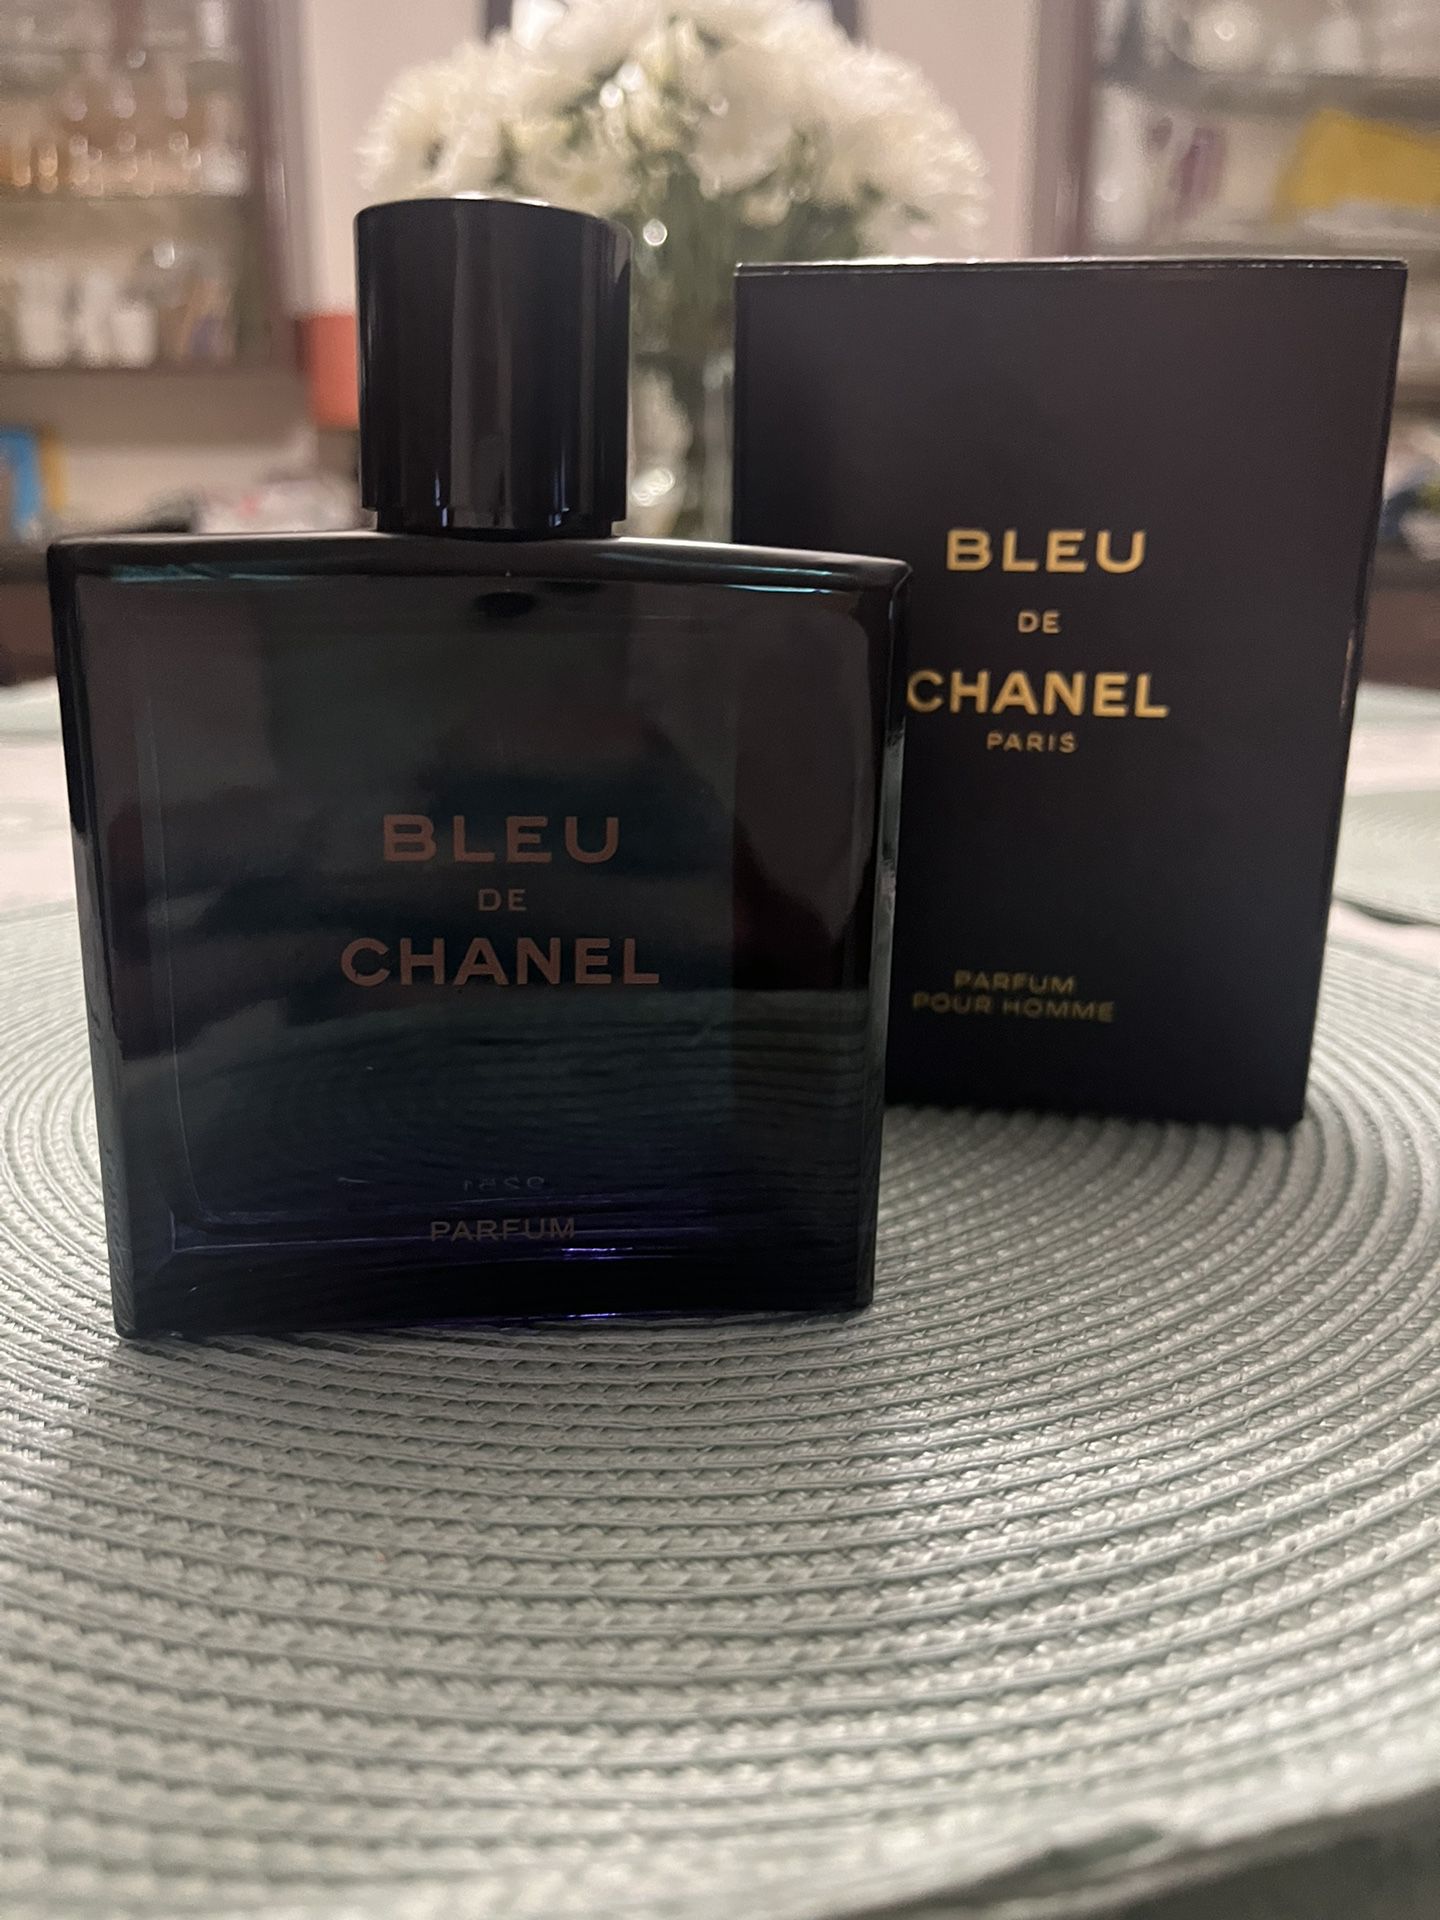 *SEND OFFERS* Bleu De Chanel 3.4 Oz Fragrance Cologne